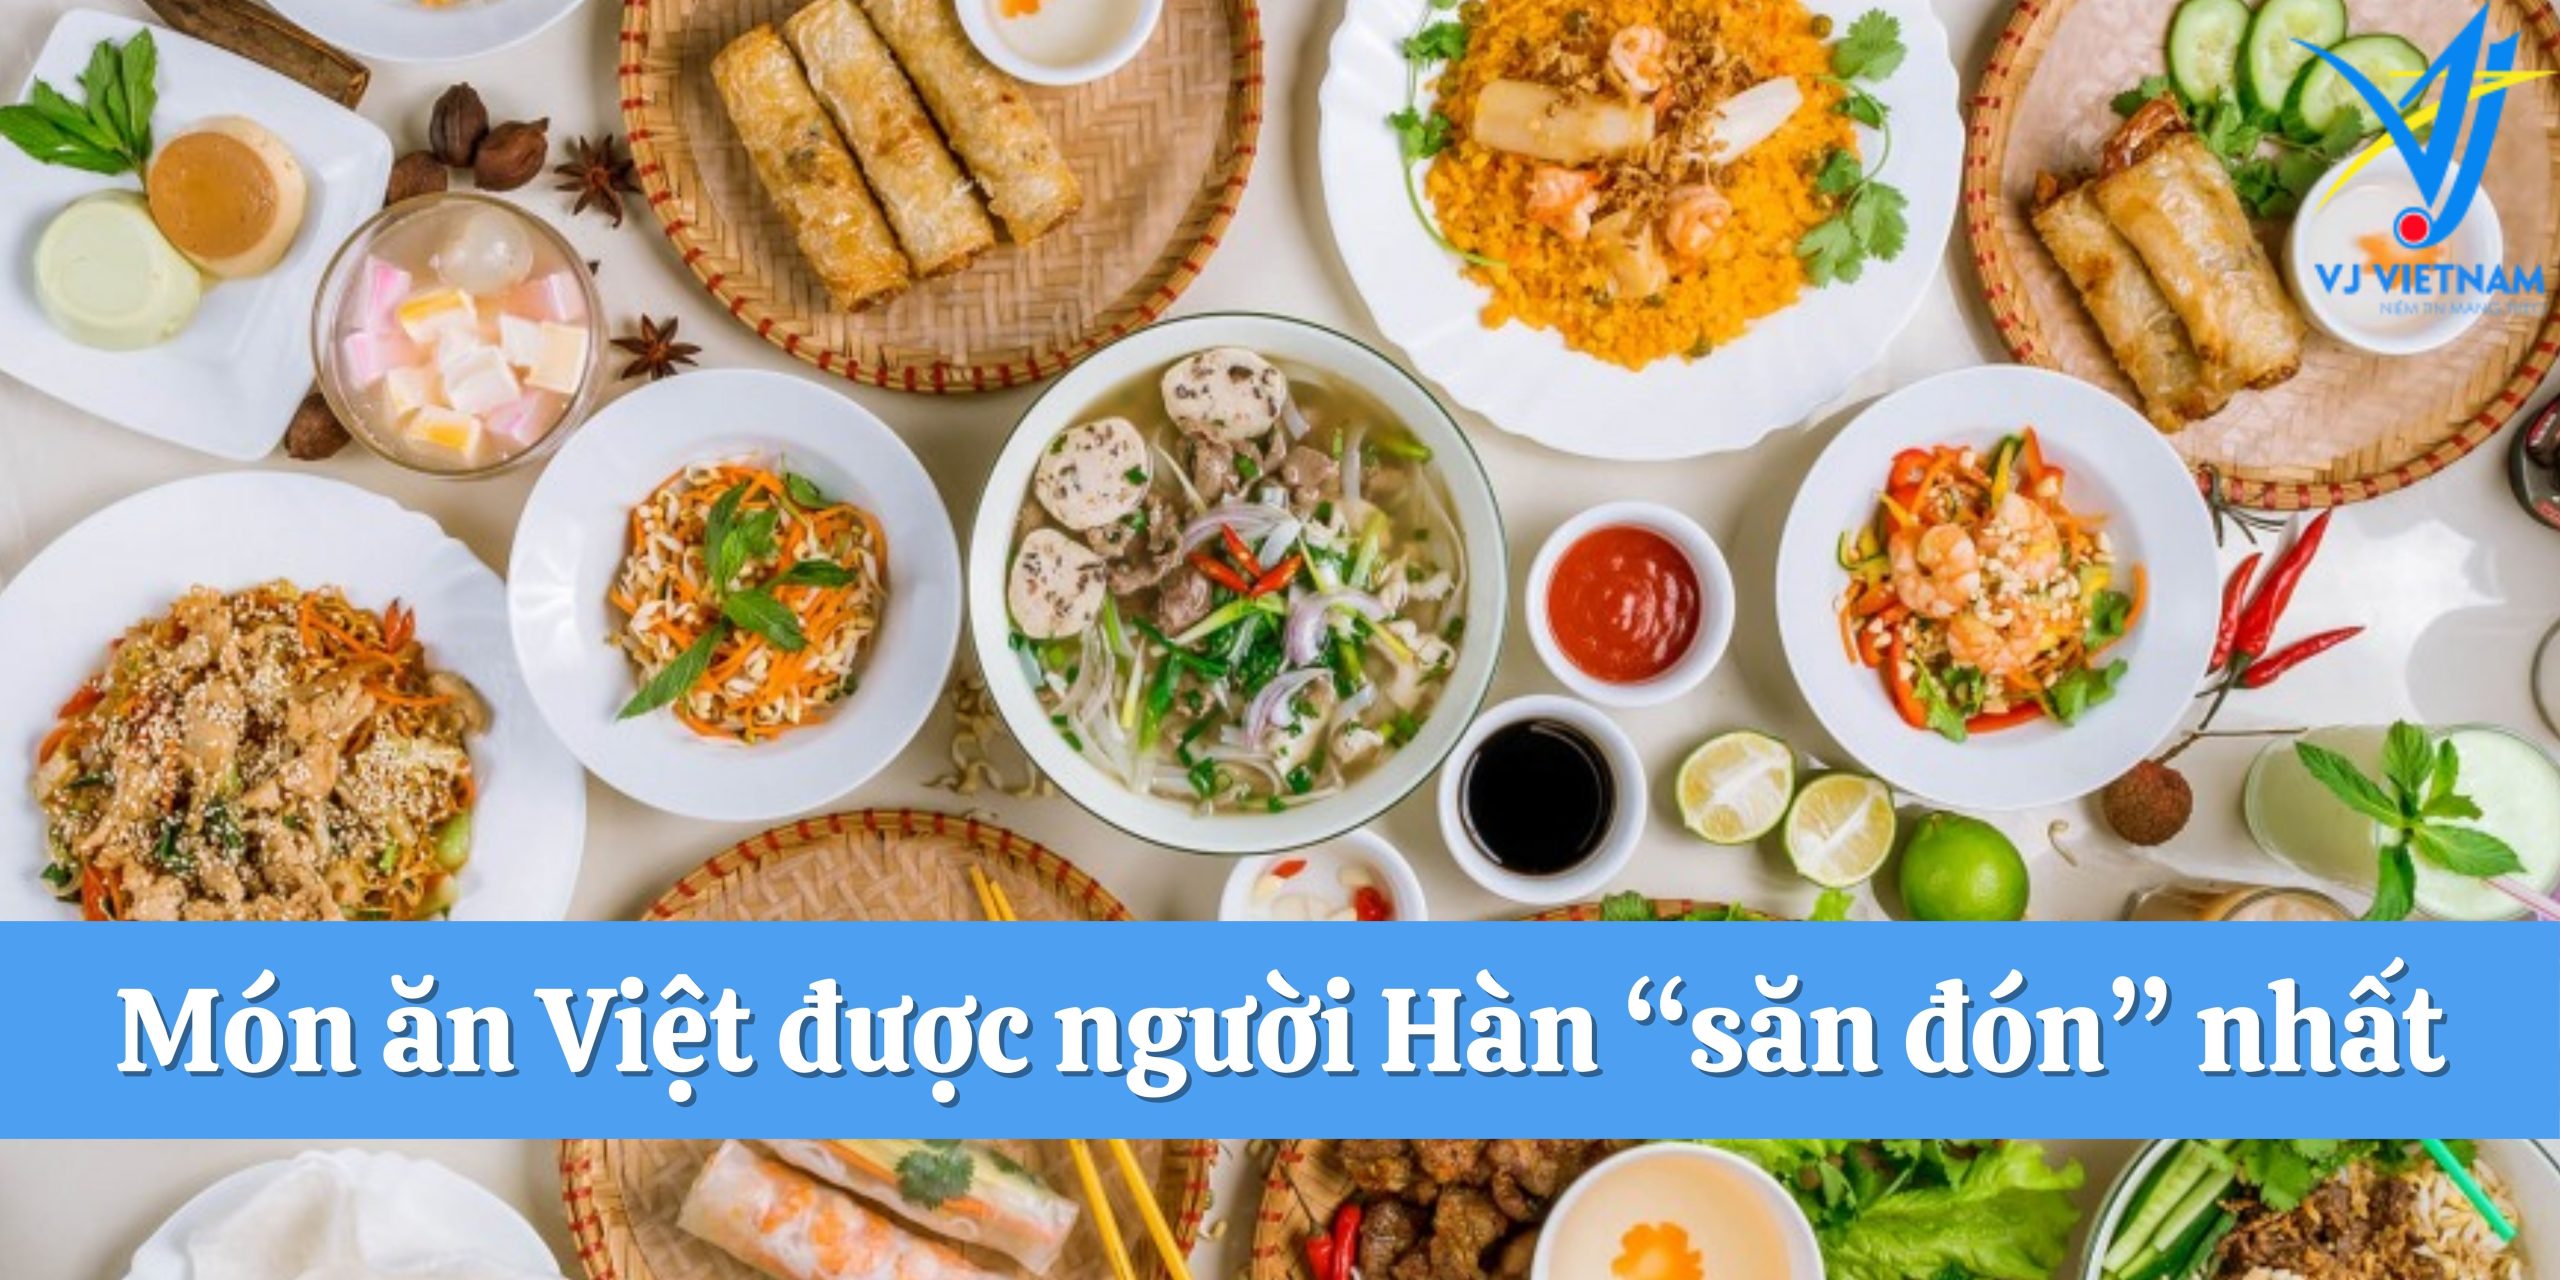 Món ăn Việt được người Hàn săn đón nhất